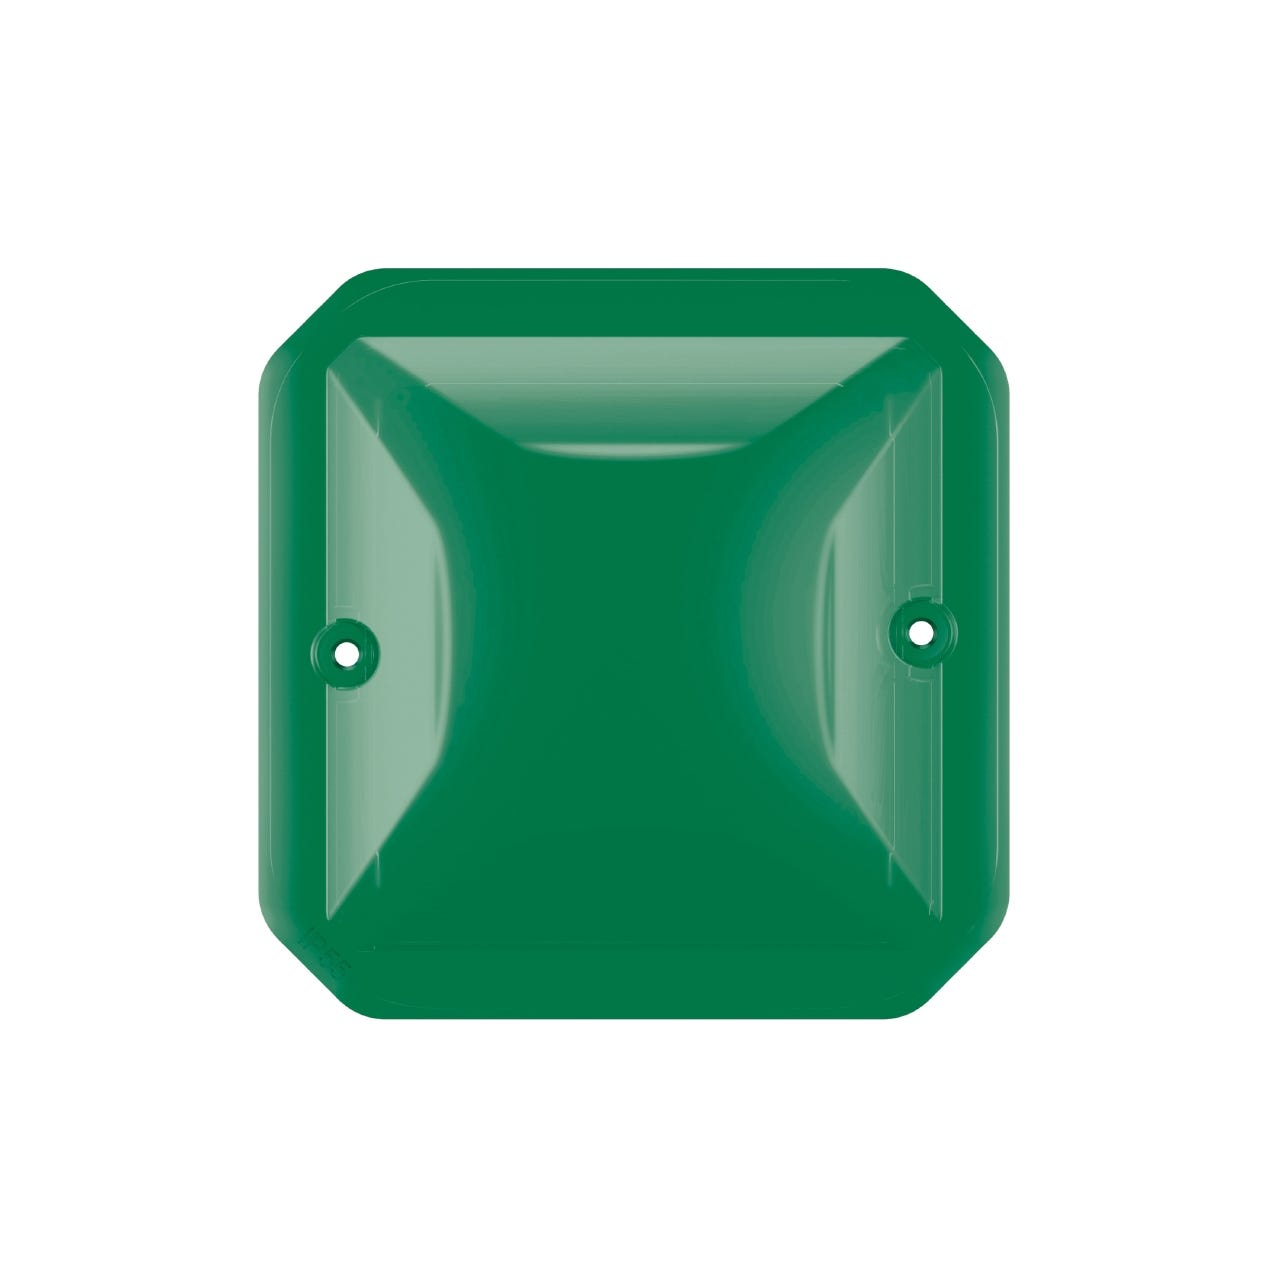 diffuseur lumineux - vert - composable - legrand plexo 069589l 0